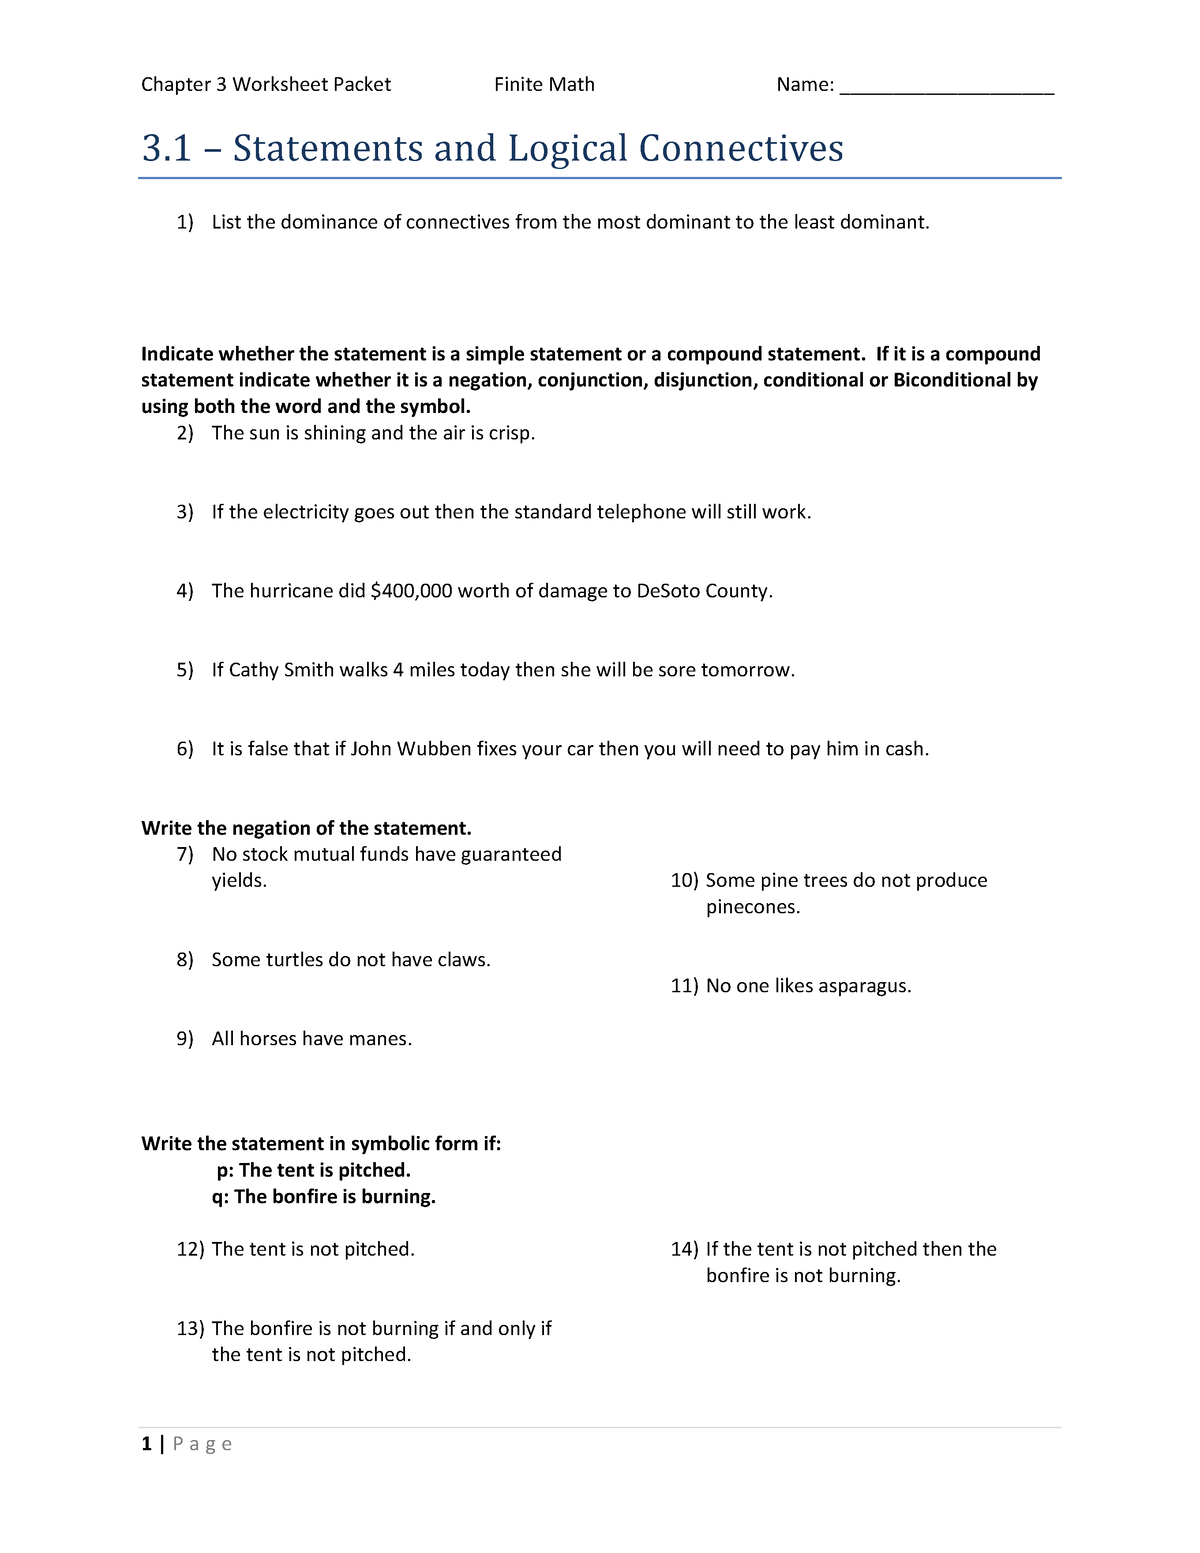 Chapter 3 Worksheet Packet Chapter 3 Worksheet Packet Finite Math